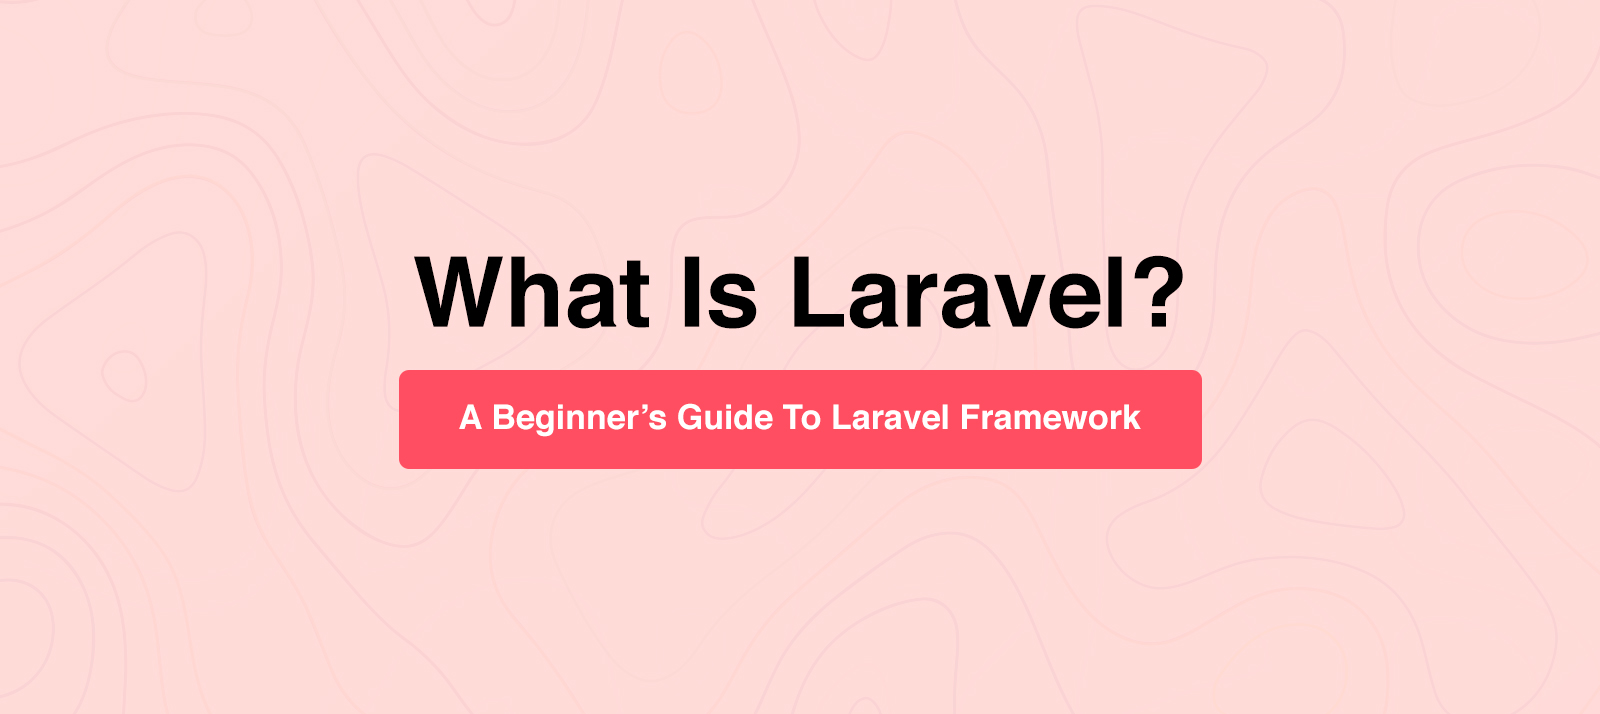  What Is Laravel? A Beginner’s Guide To Laravel Framework 